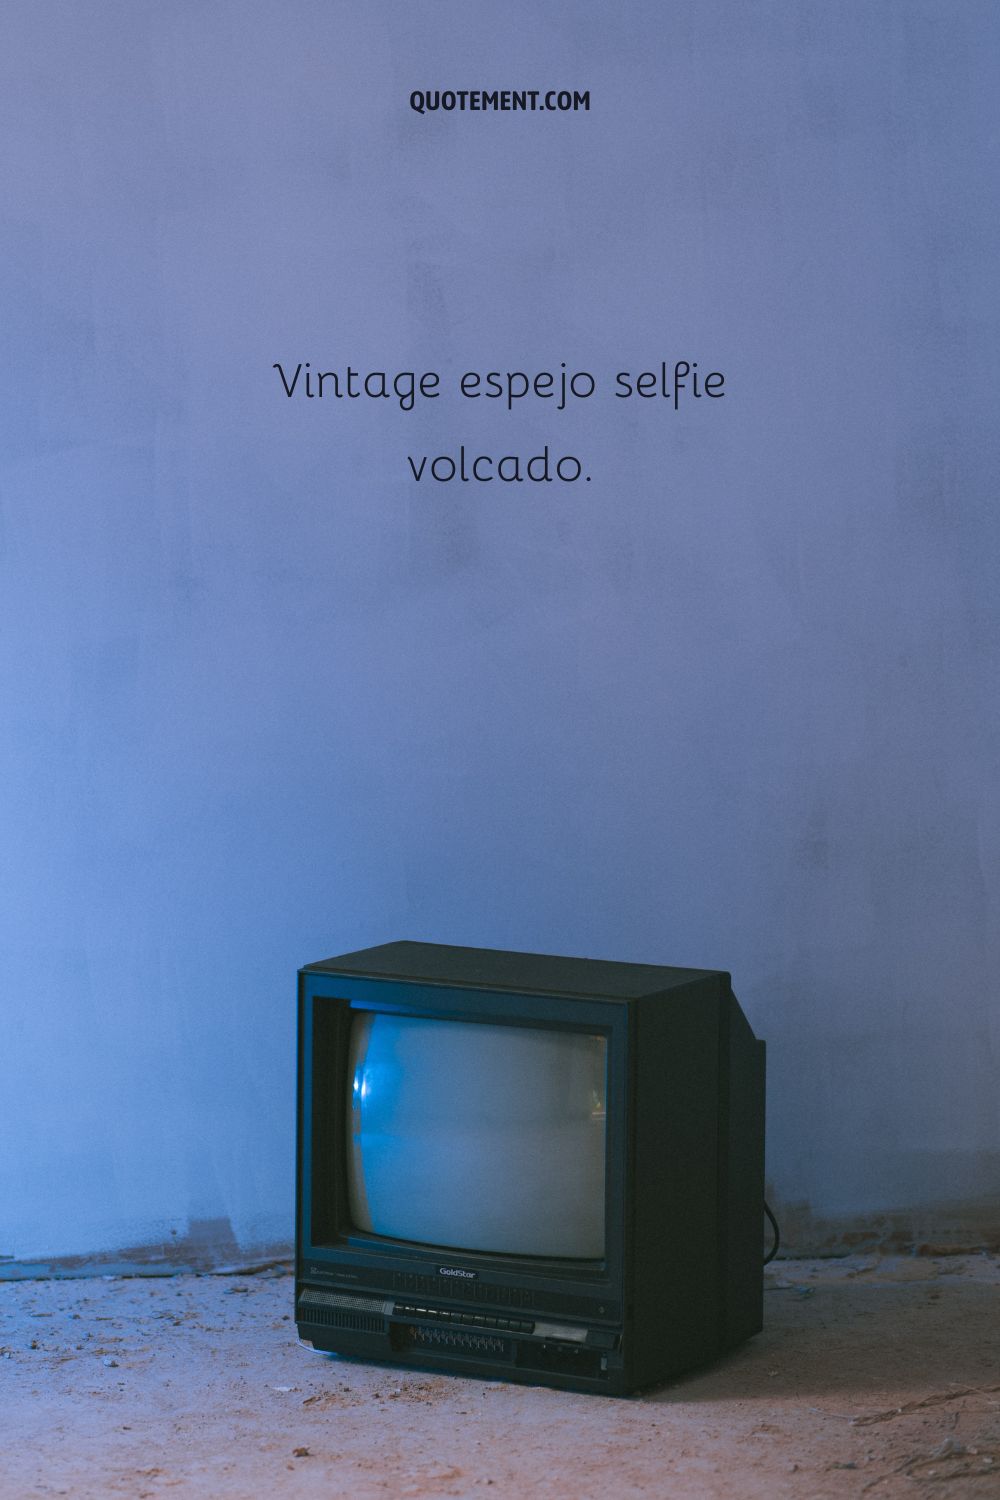 Espejo vintage selfie dump.